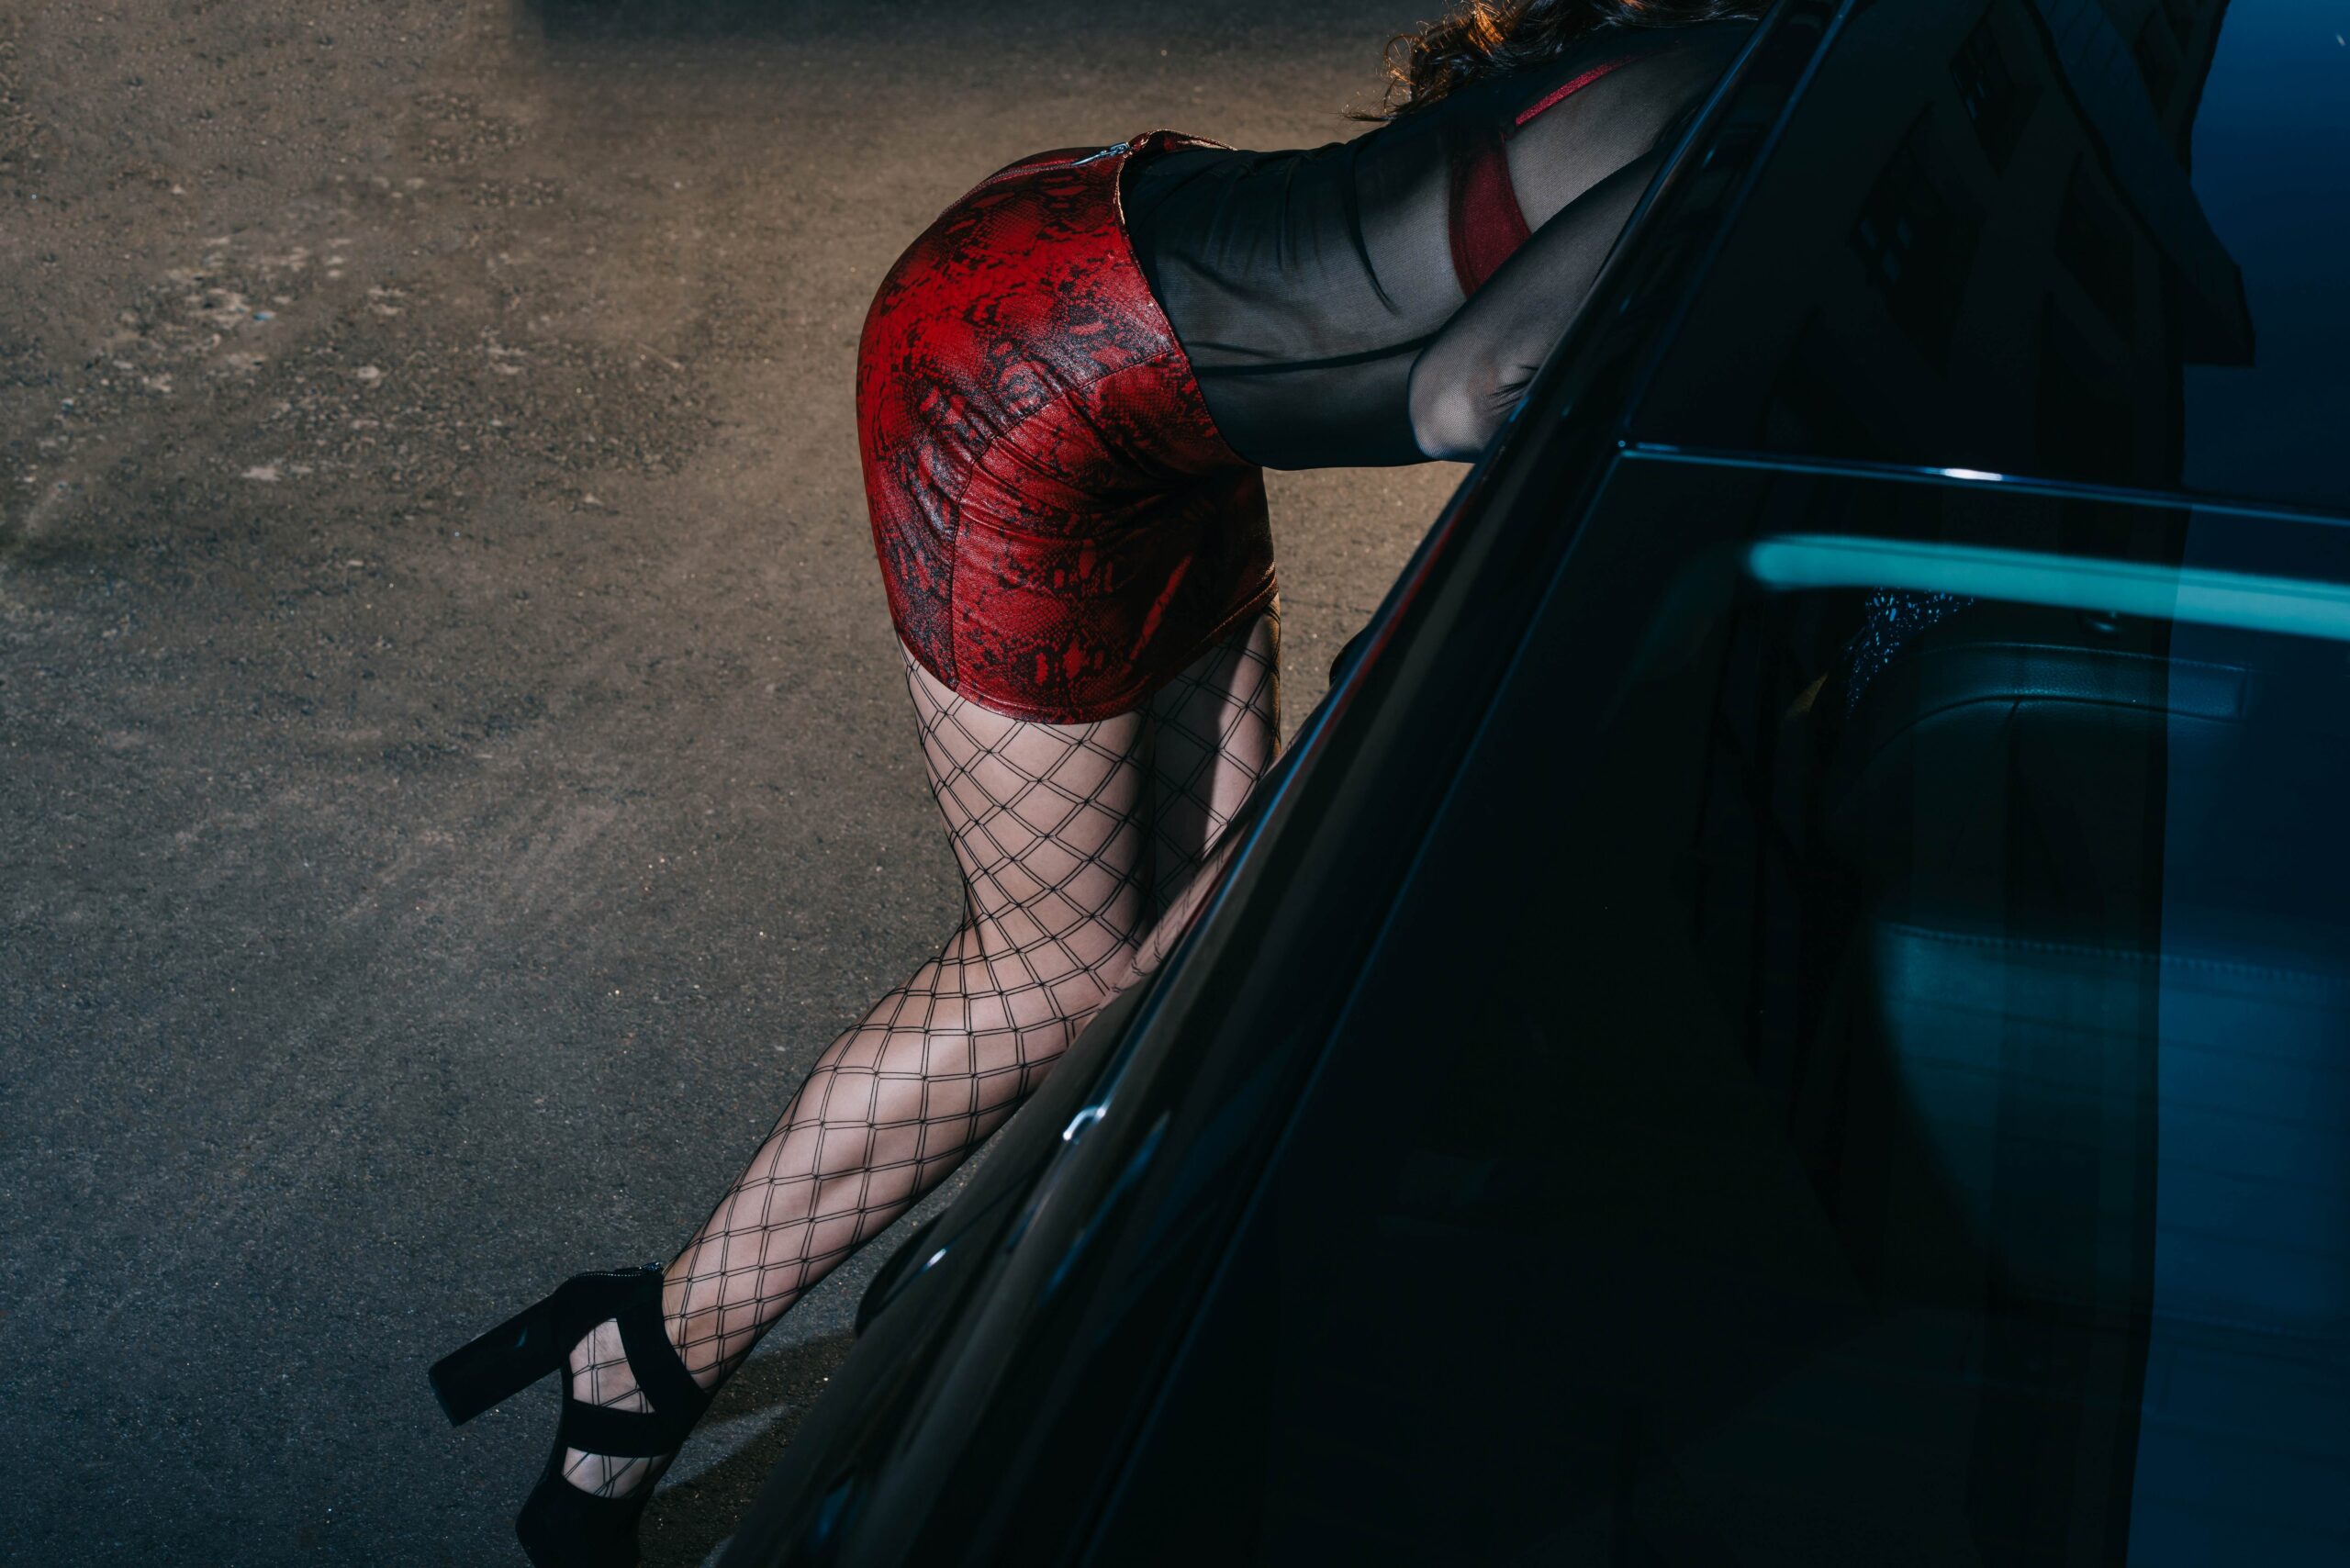 BDSM Escort in verführerischer Pose neben einem dunklen Auto, trägt ein rotes Outfit und Netzstrümpfe, unterstreicht die Kombination aus Eleganz und Provokation in einem urbanen Umfeld